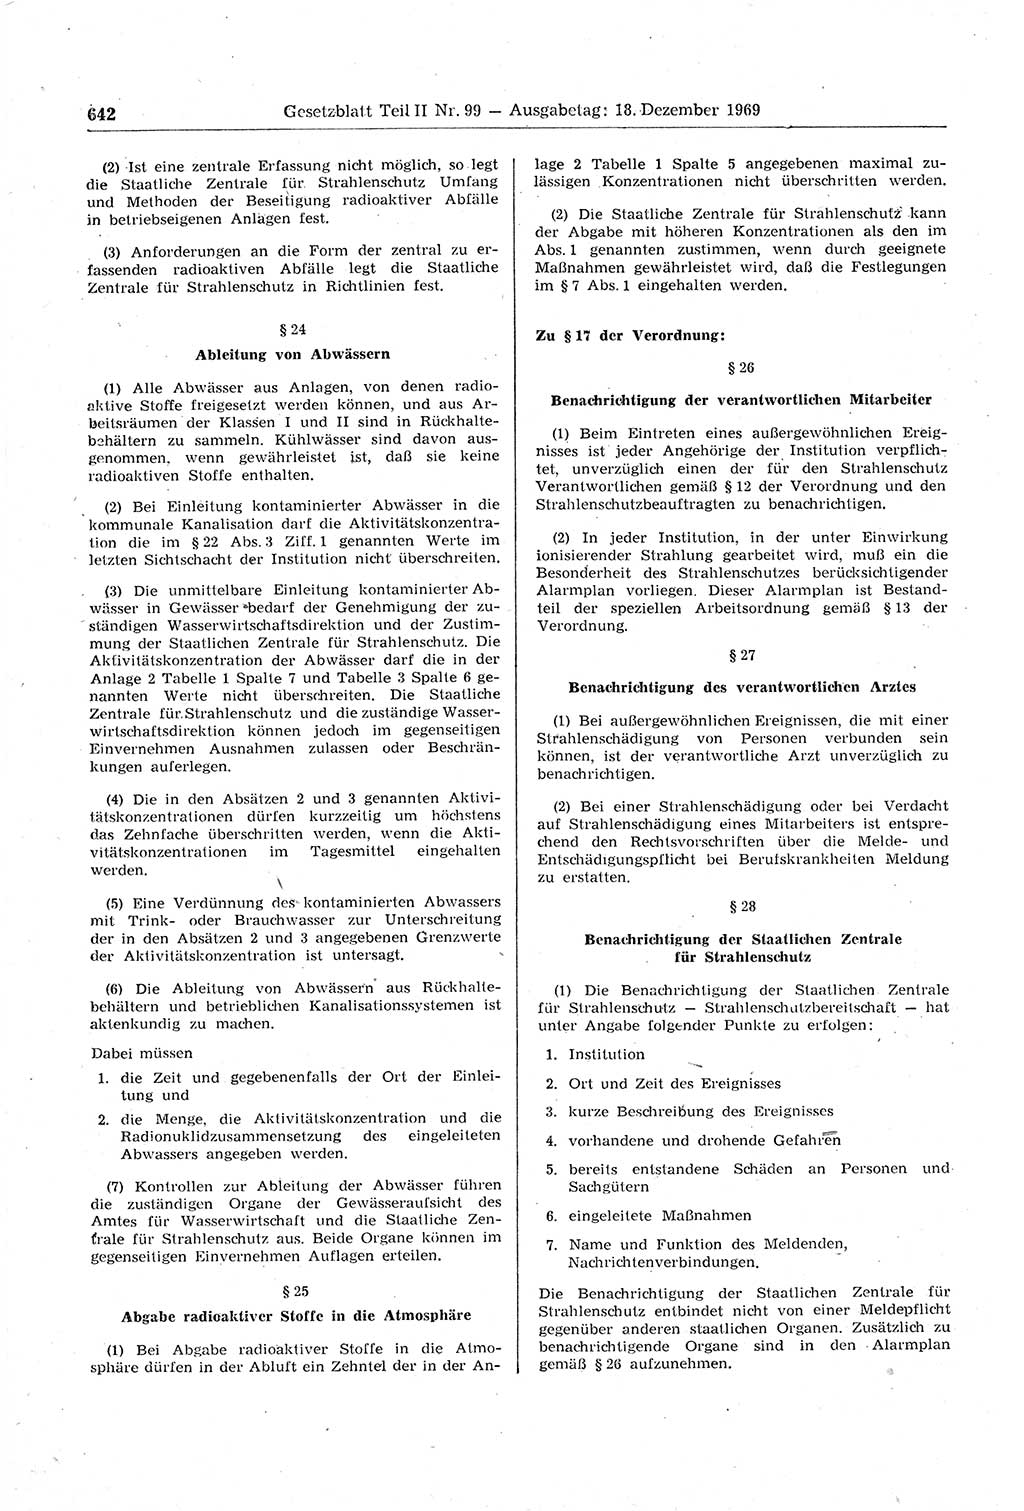 Gesetzblatt (GBl.) der Deutschen Demokratischen Republik (DDR) Teil ⅠⅠ 1969, Seite 642 (GBl. DDR ⅠⅠ 1969, S. 642)